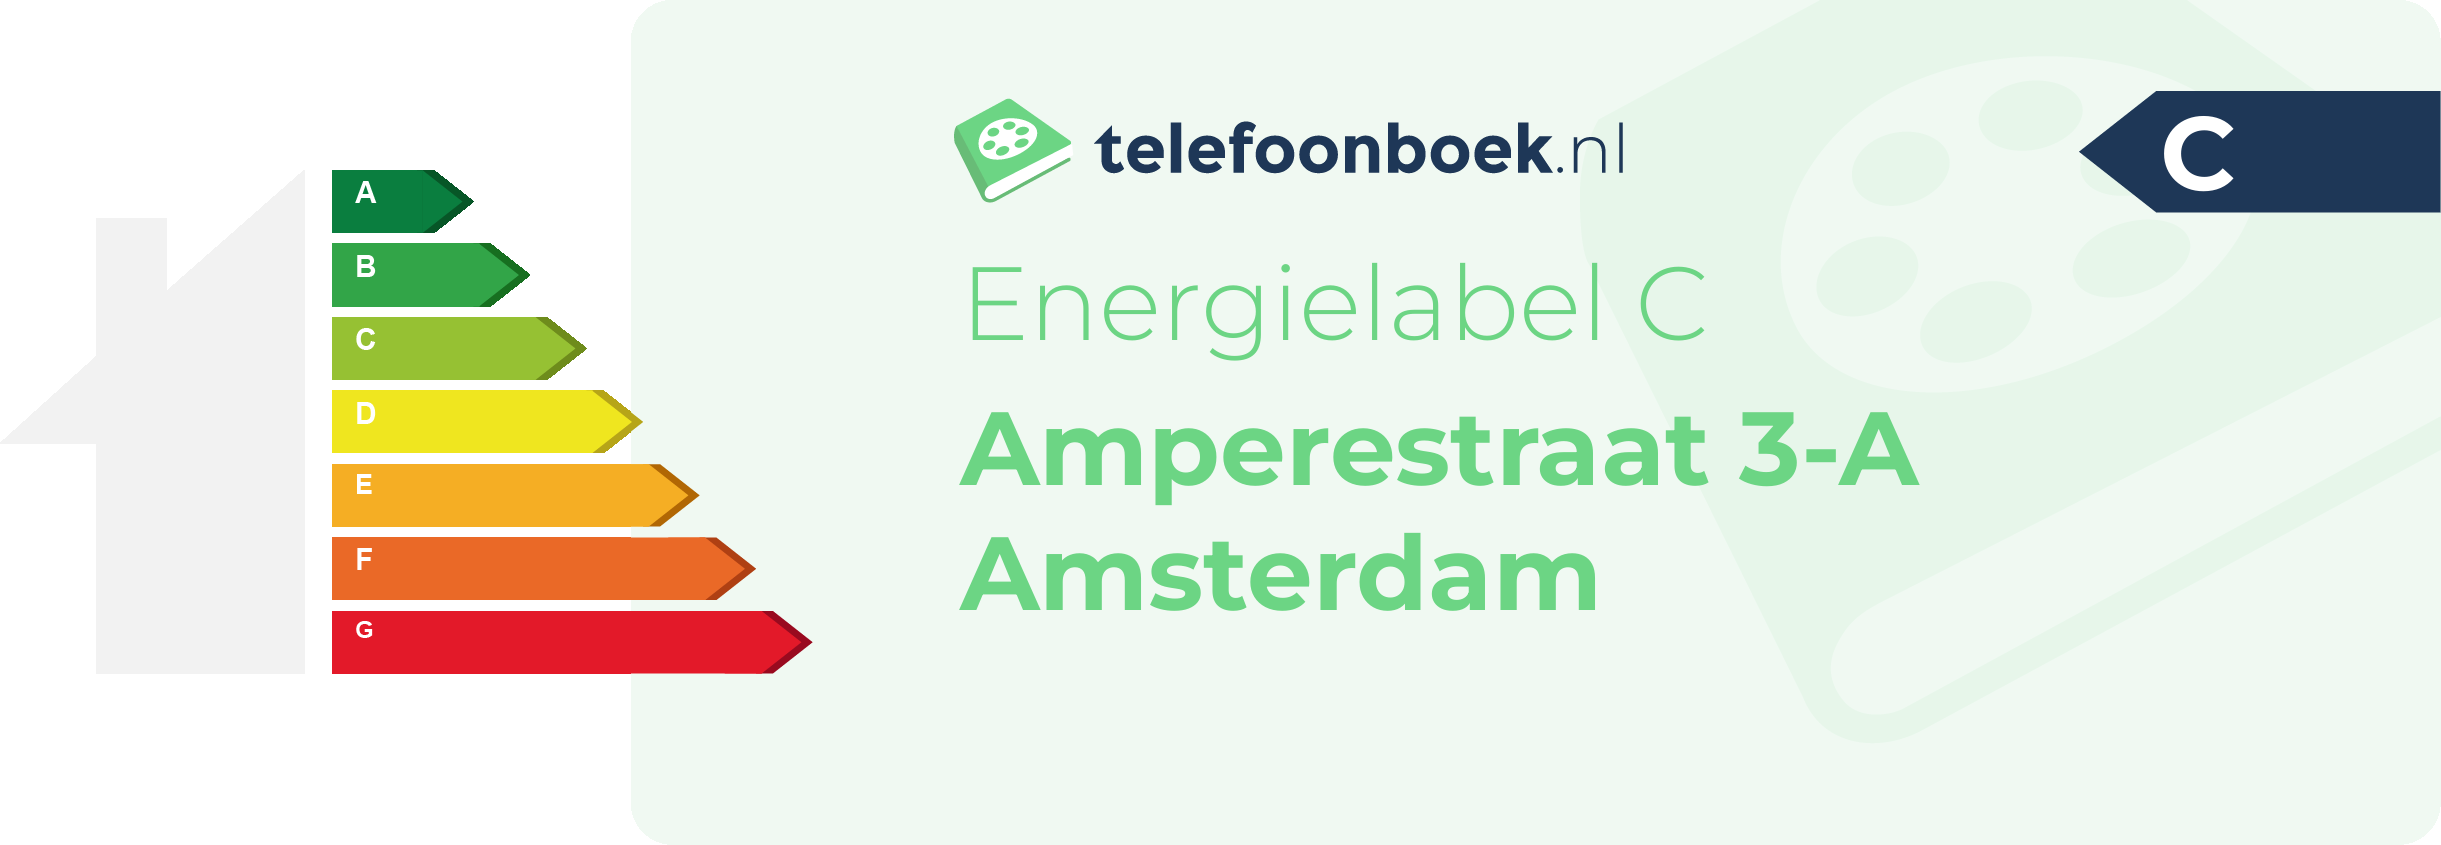 Energielabel Amperestraat 3-A Amsterdam